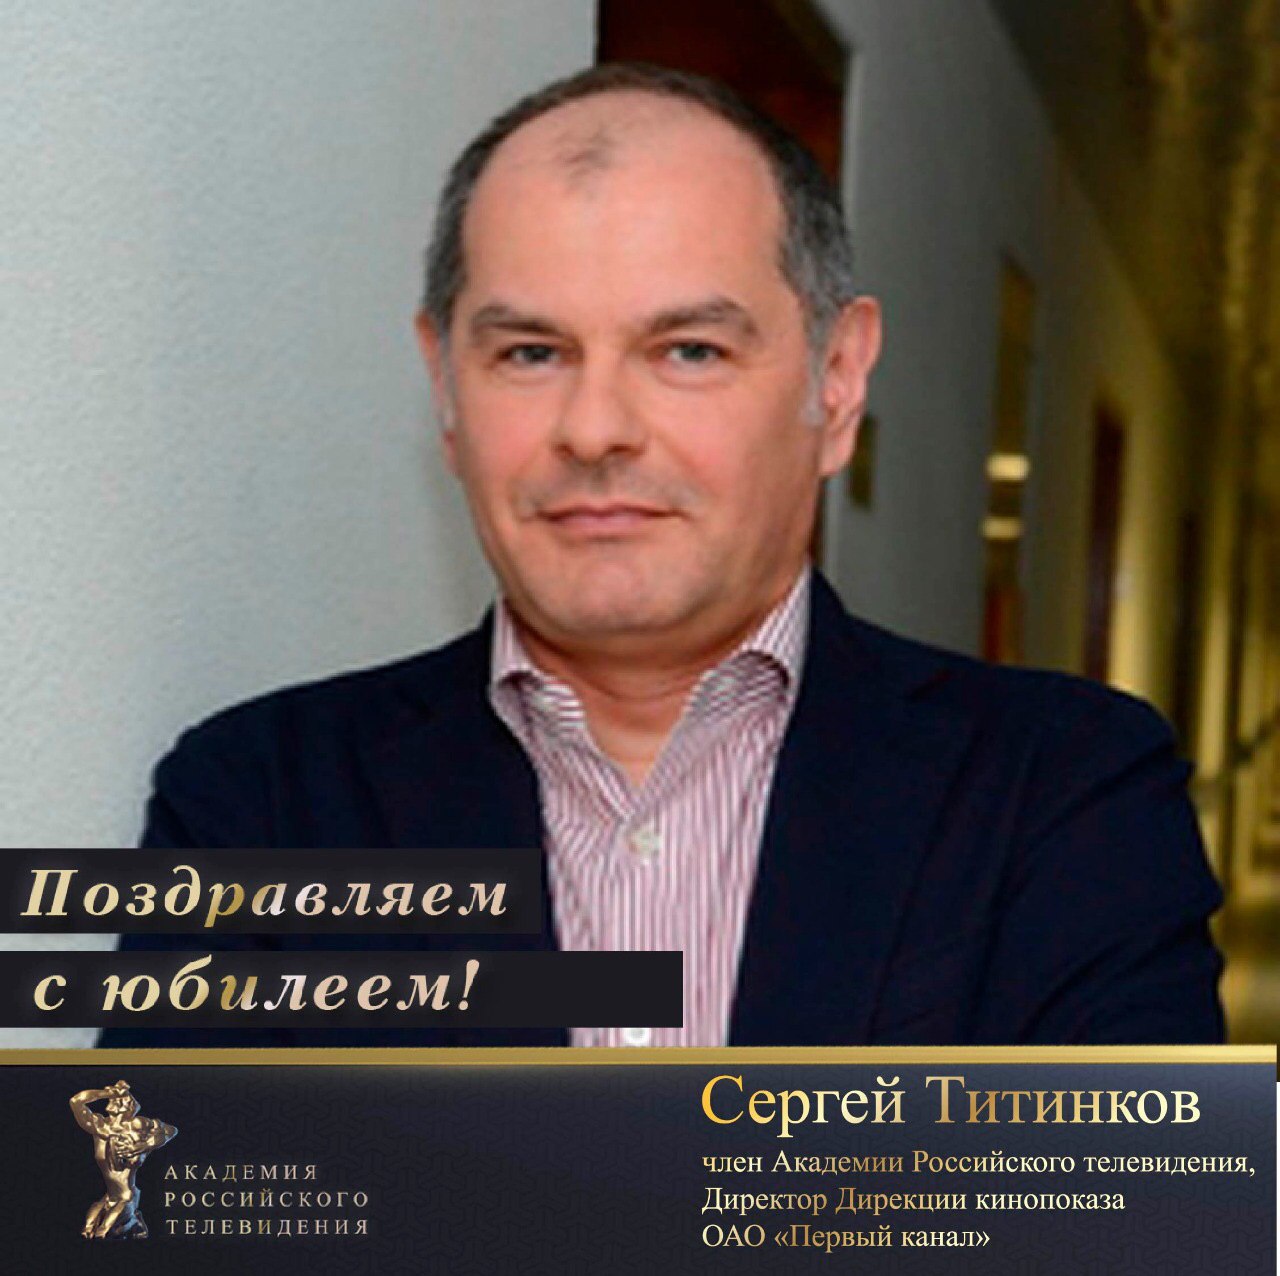 Сергей Титинков